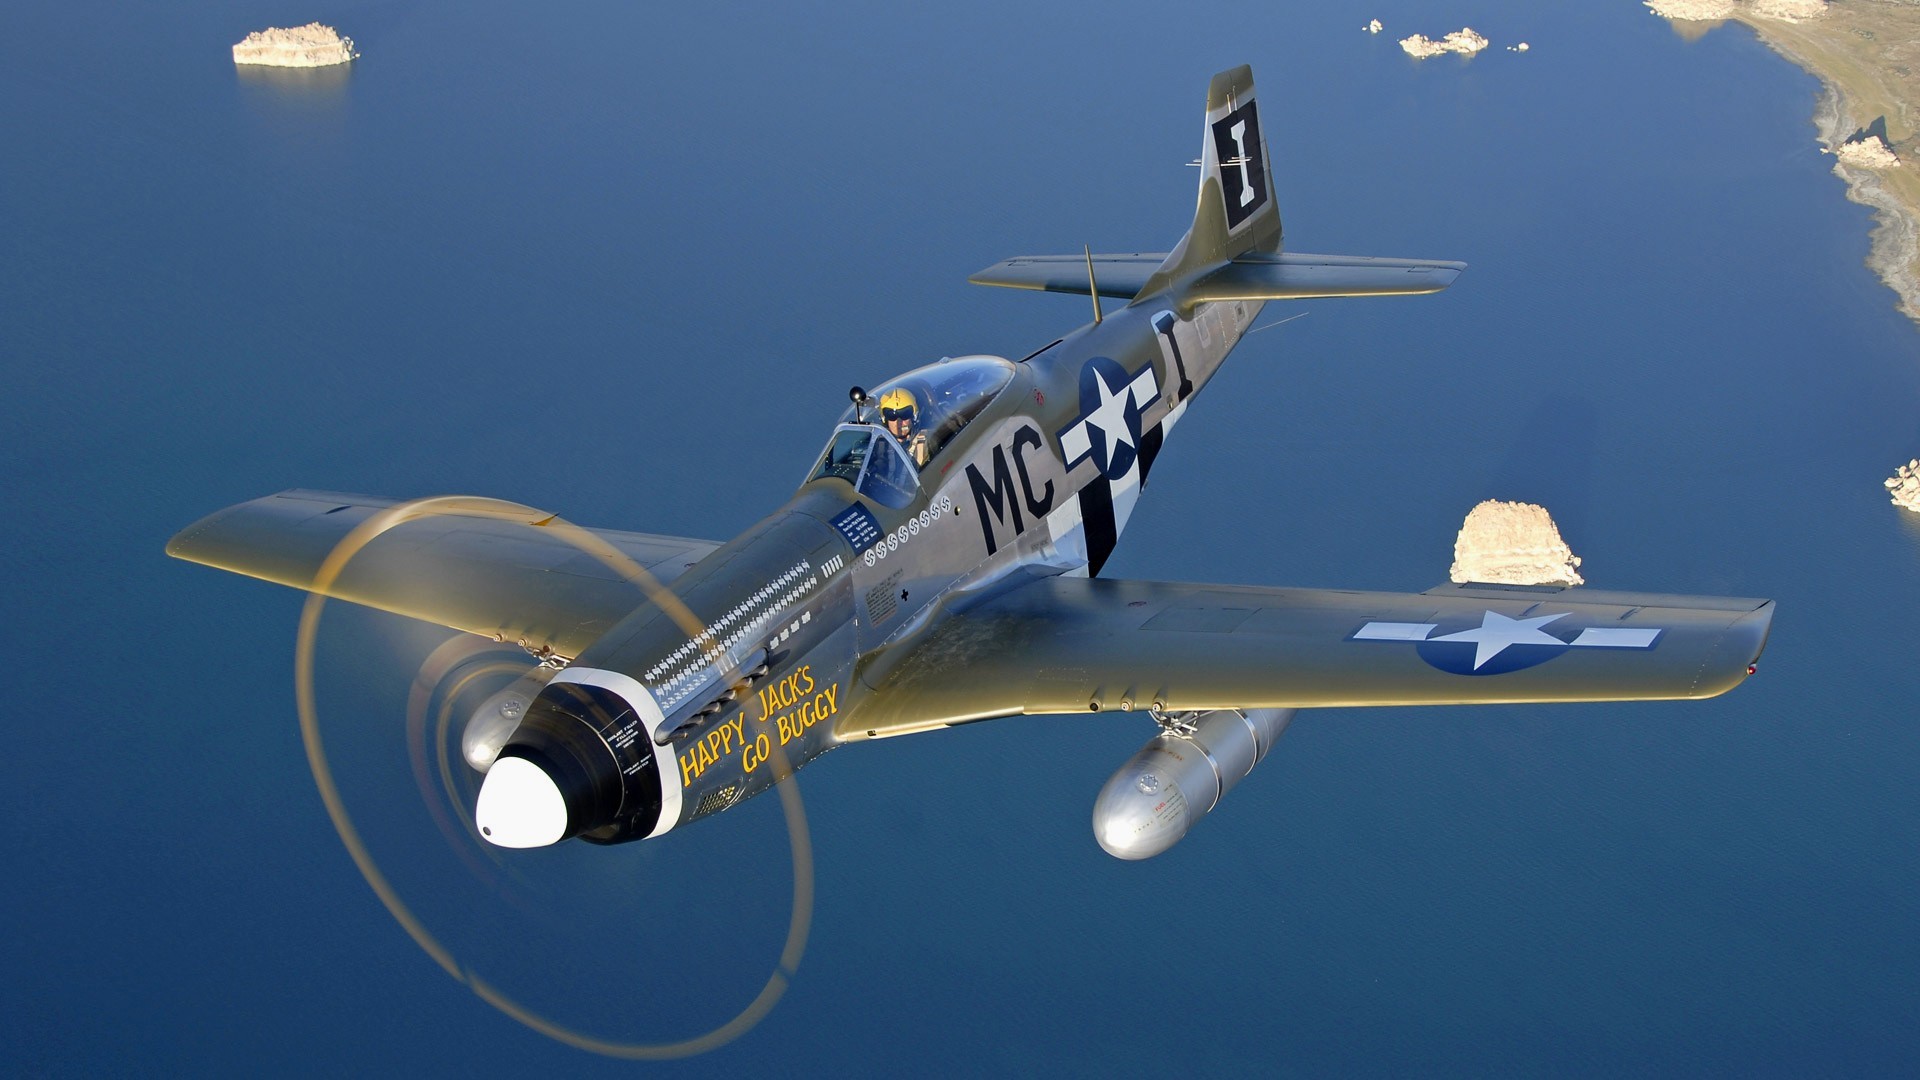 1920x1080 Aircraft Warbird P-51 Mustang wallpaper |  | 118653 | WallpaperUP